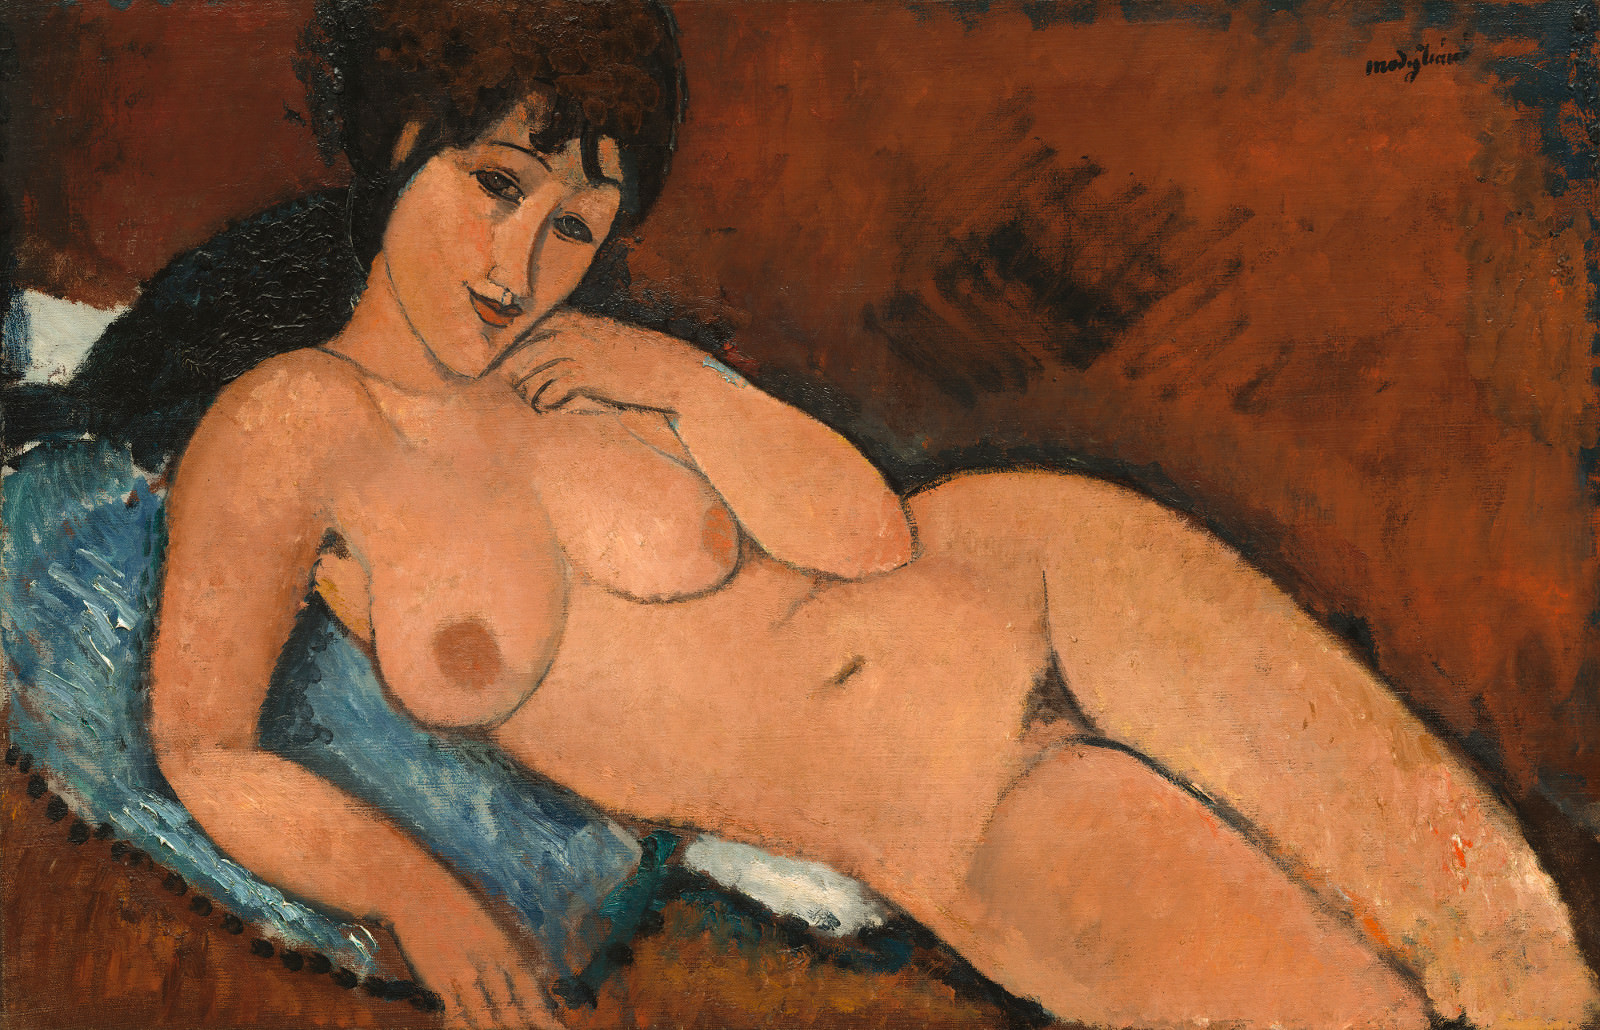 Fig. 9 - Desnudo en el amortiguador azul, Amedeo Modigliani, 1917, El aceite de linaza en, 65.4 x 100.9 cm. National Gallery of Art, Washington. Colección de Chester Dale.